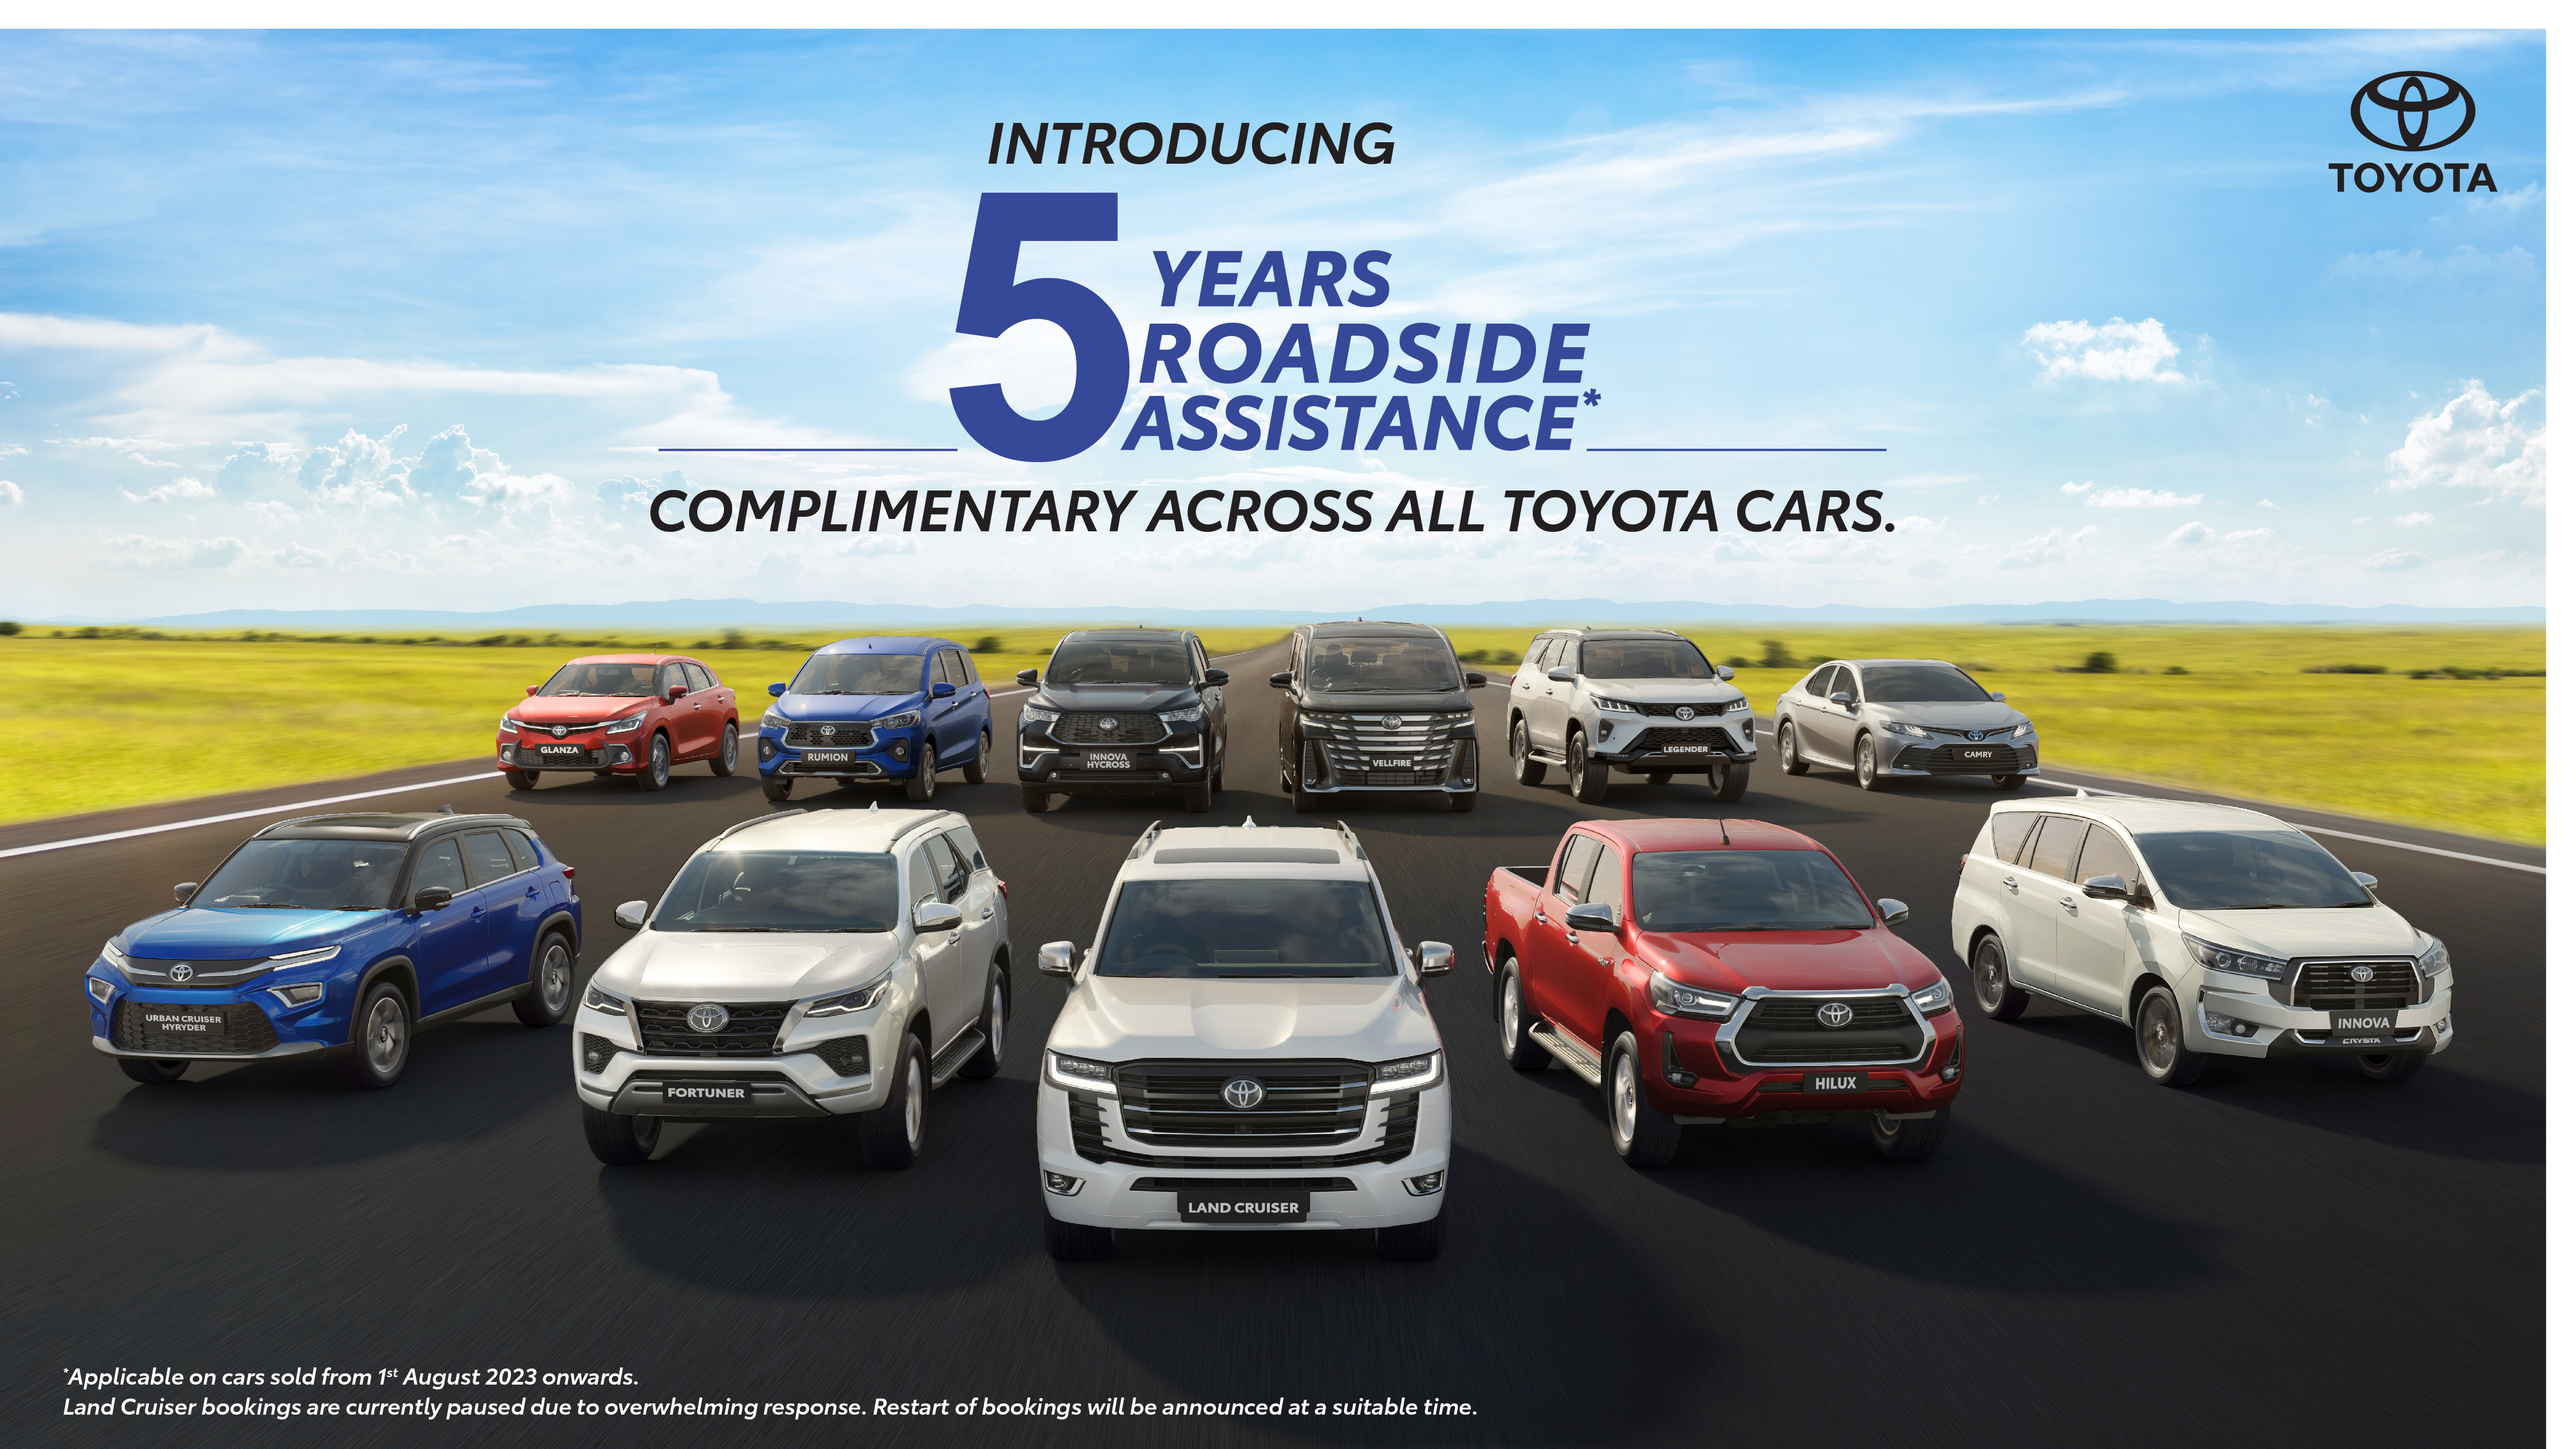 Toyota Kirloskar Motor offers 5Years of ComplimentaryRoadside Assistance Program